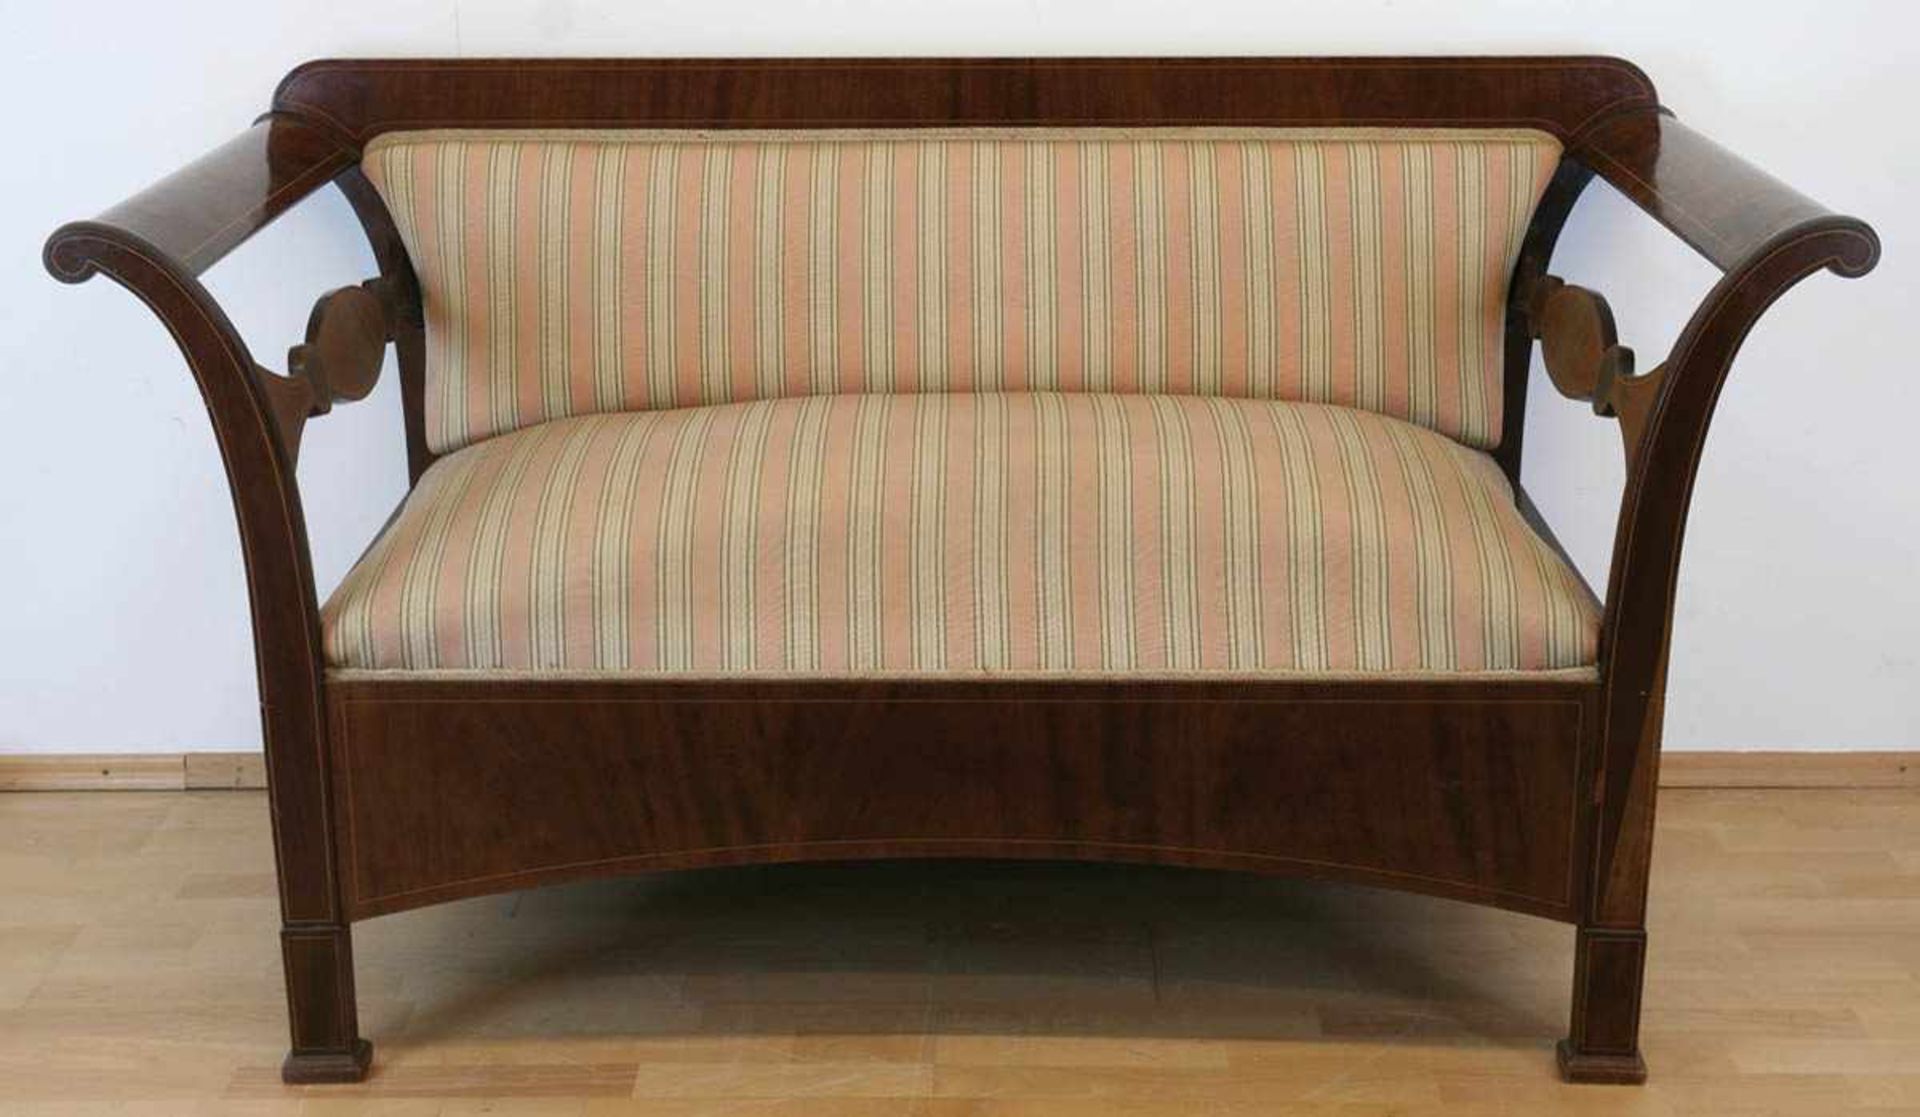 Biedermeier-Sofa, Mahagoni furniert, Fadenintarsien, gepolsterter Sitz und Rückenlehne,heller